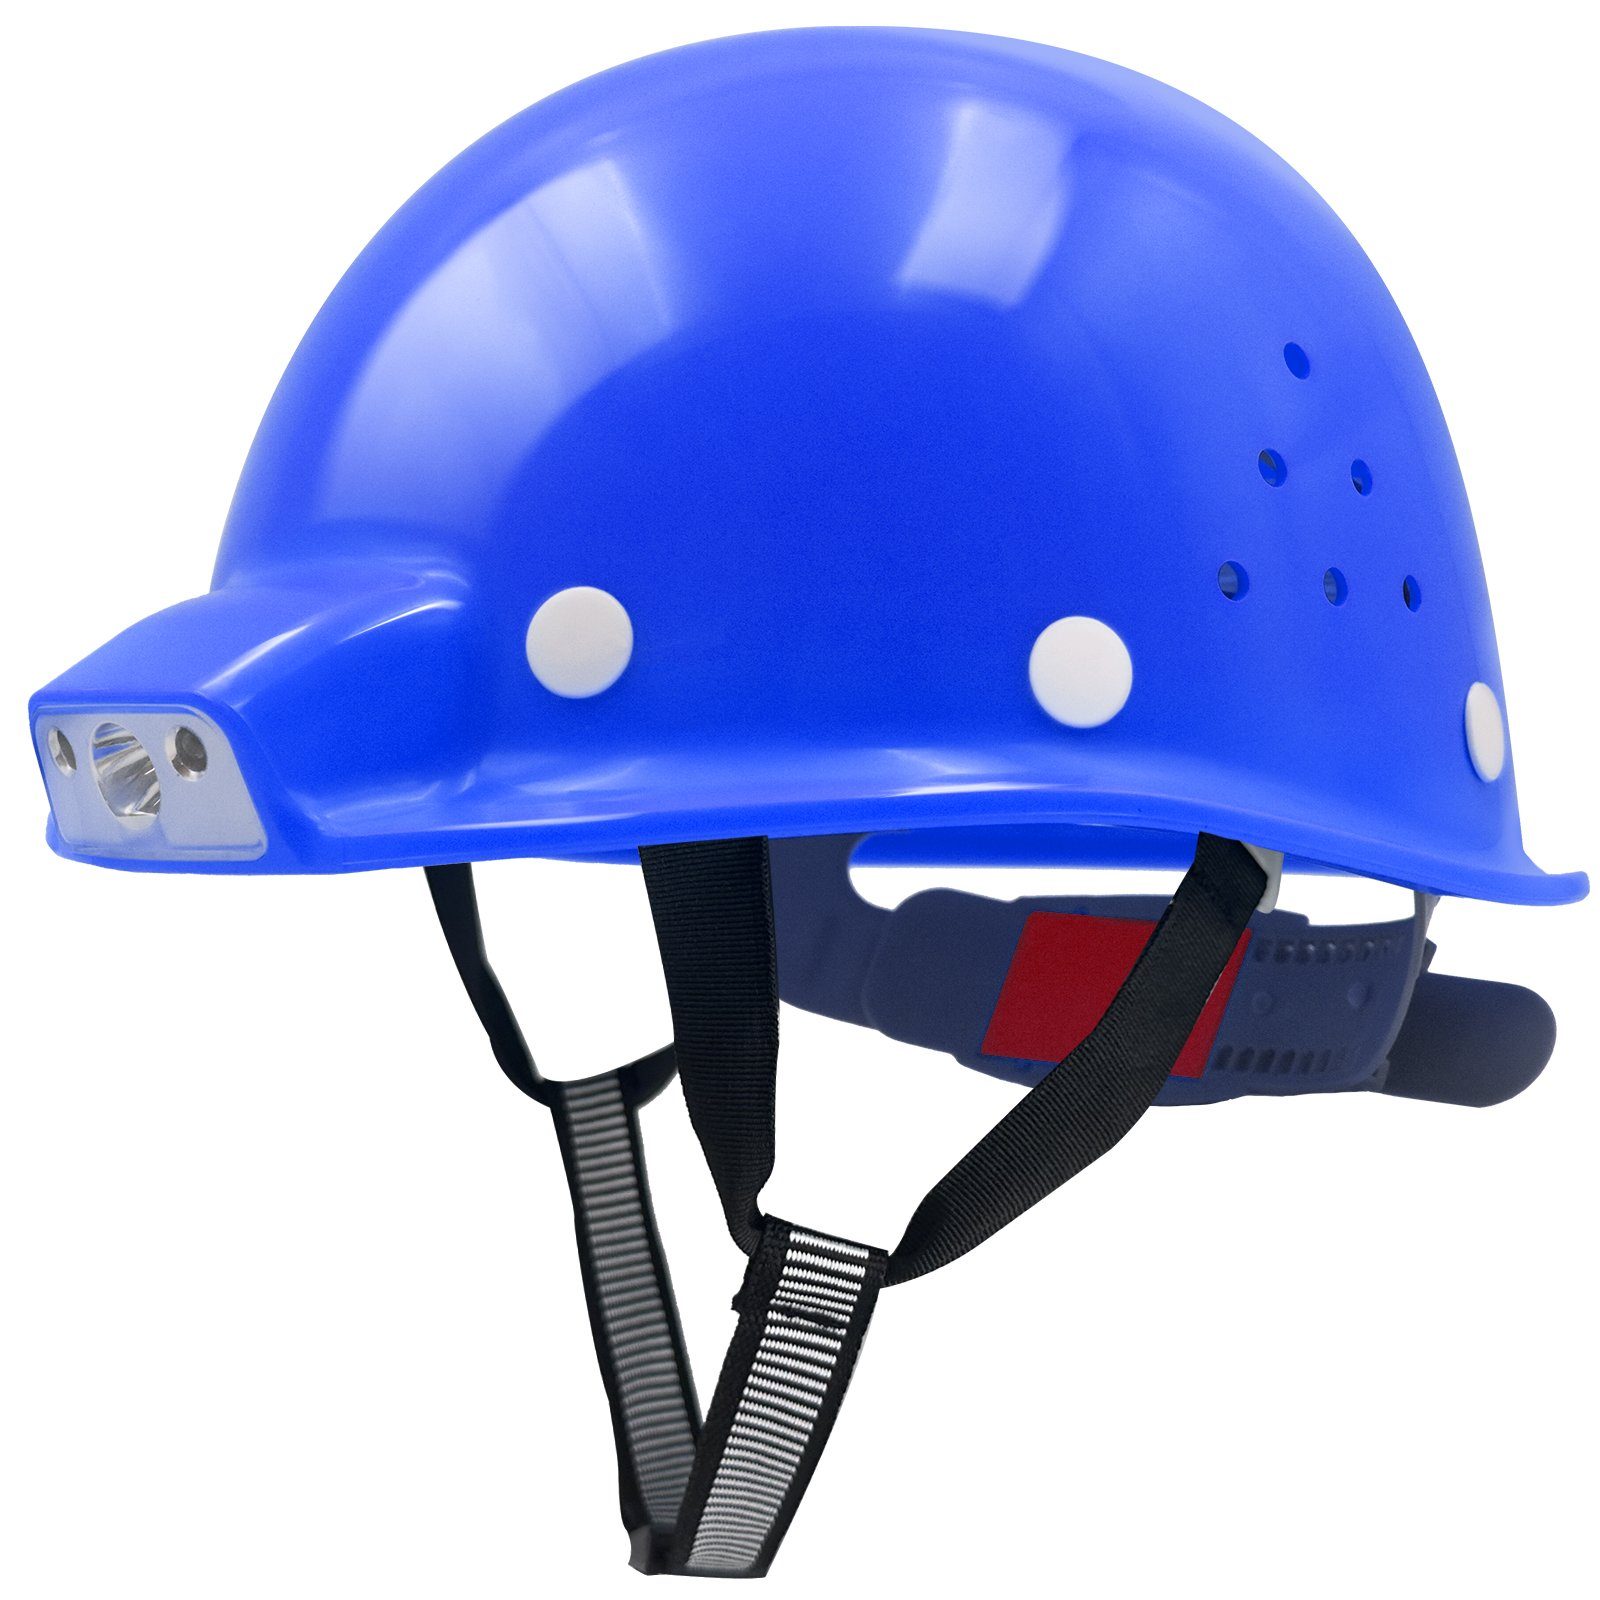 Mustbau Schutzhelm, ABS Bauhelm Arbeitshelm USB-Aufladen-Licht,53-62cm Einstellbar